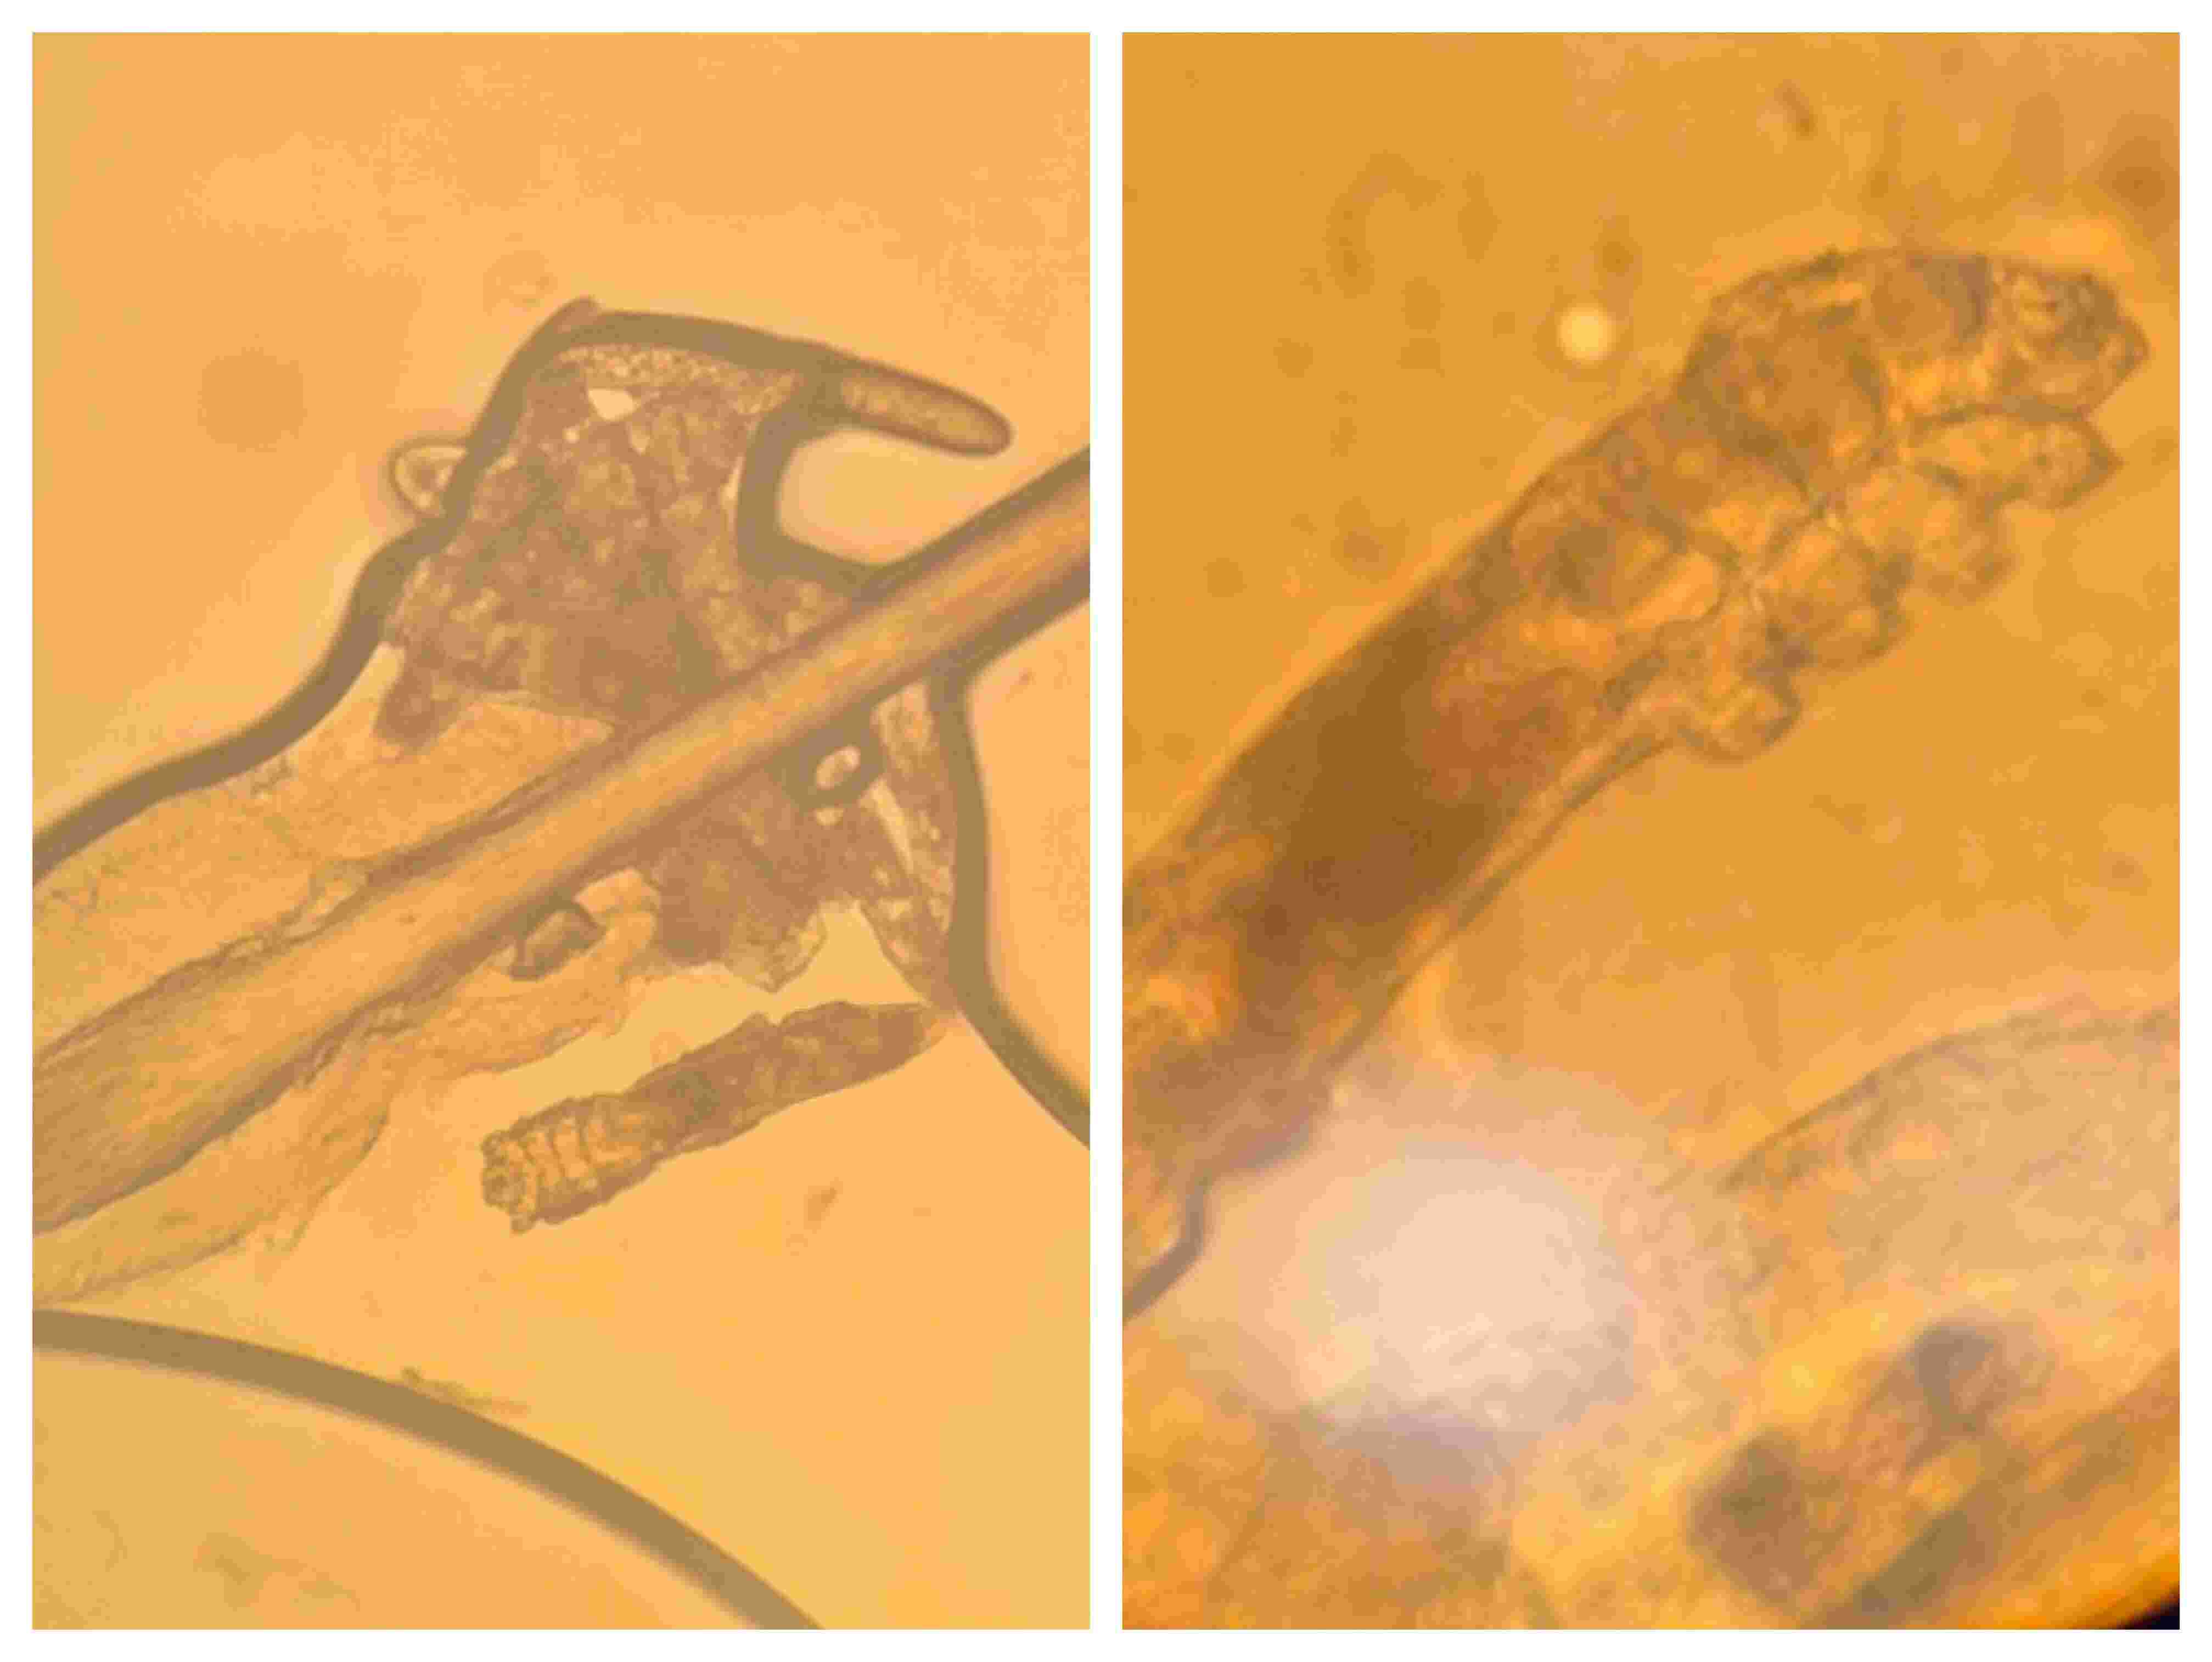 Demodex mite infestation of eyelash